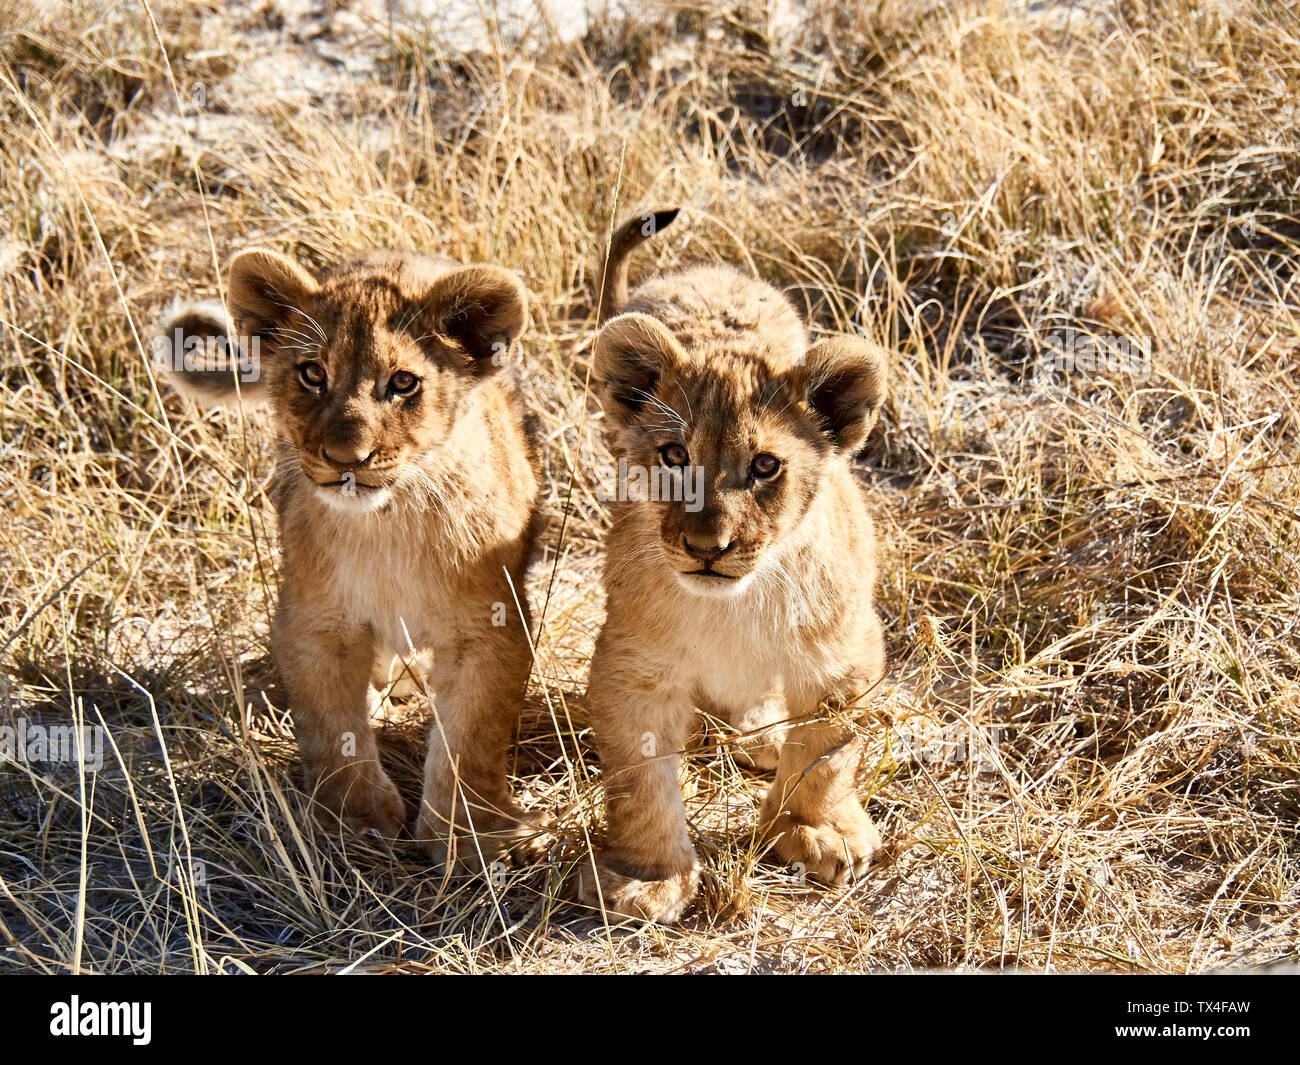 L'Afrique, la Namibie, l'Halali, Etosha National Park, portrait de deux lionceaux Banque D'Images